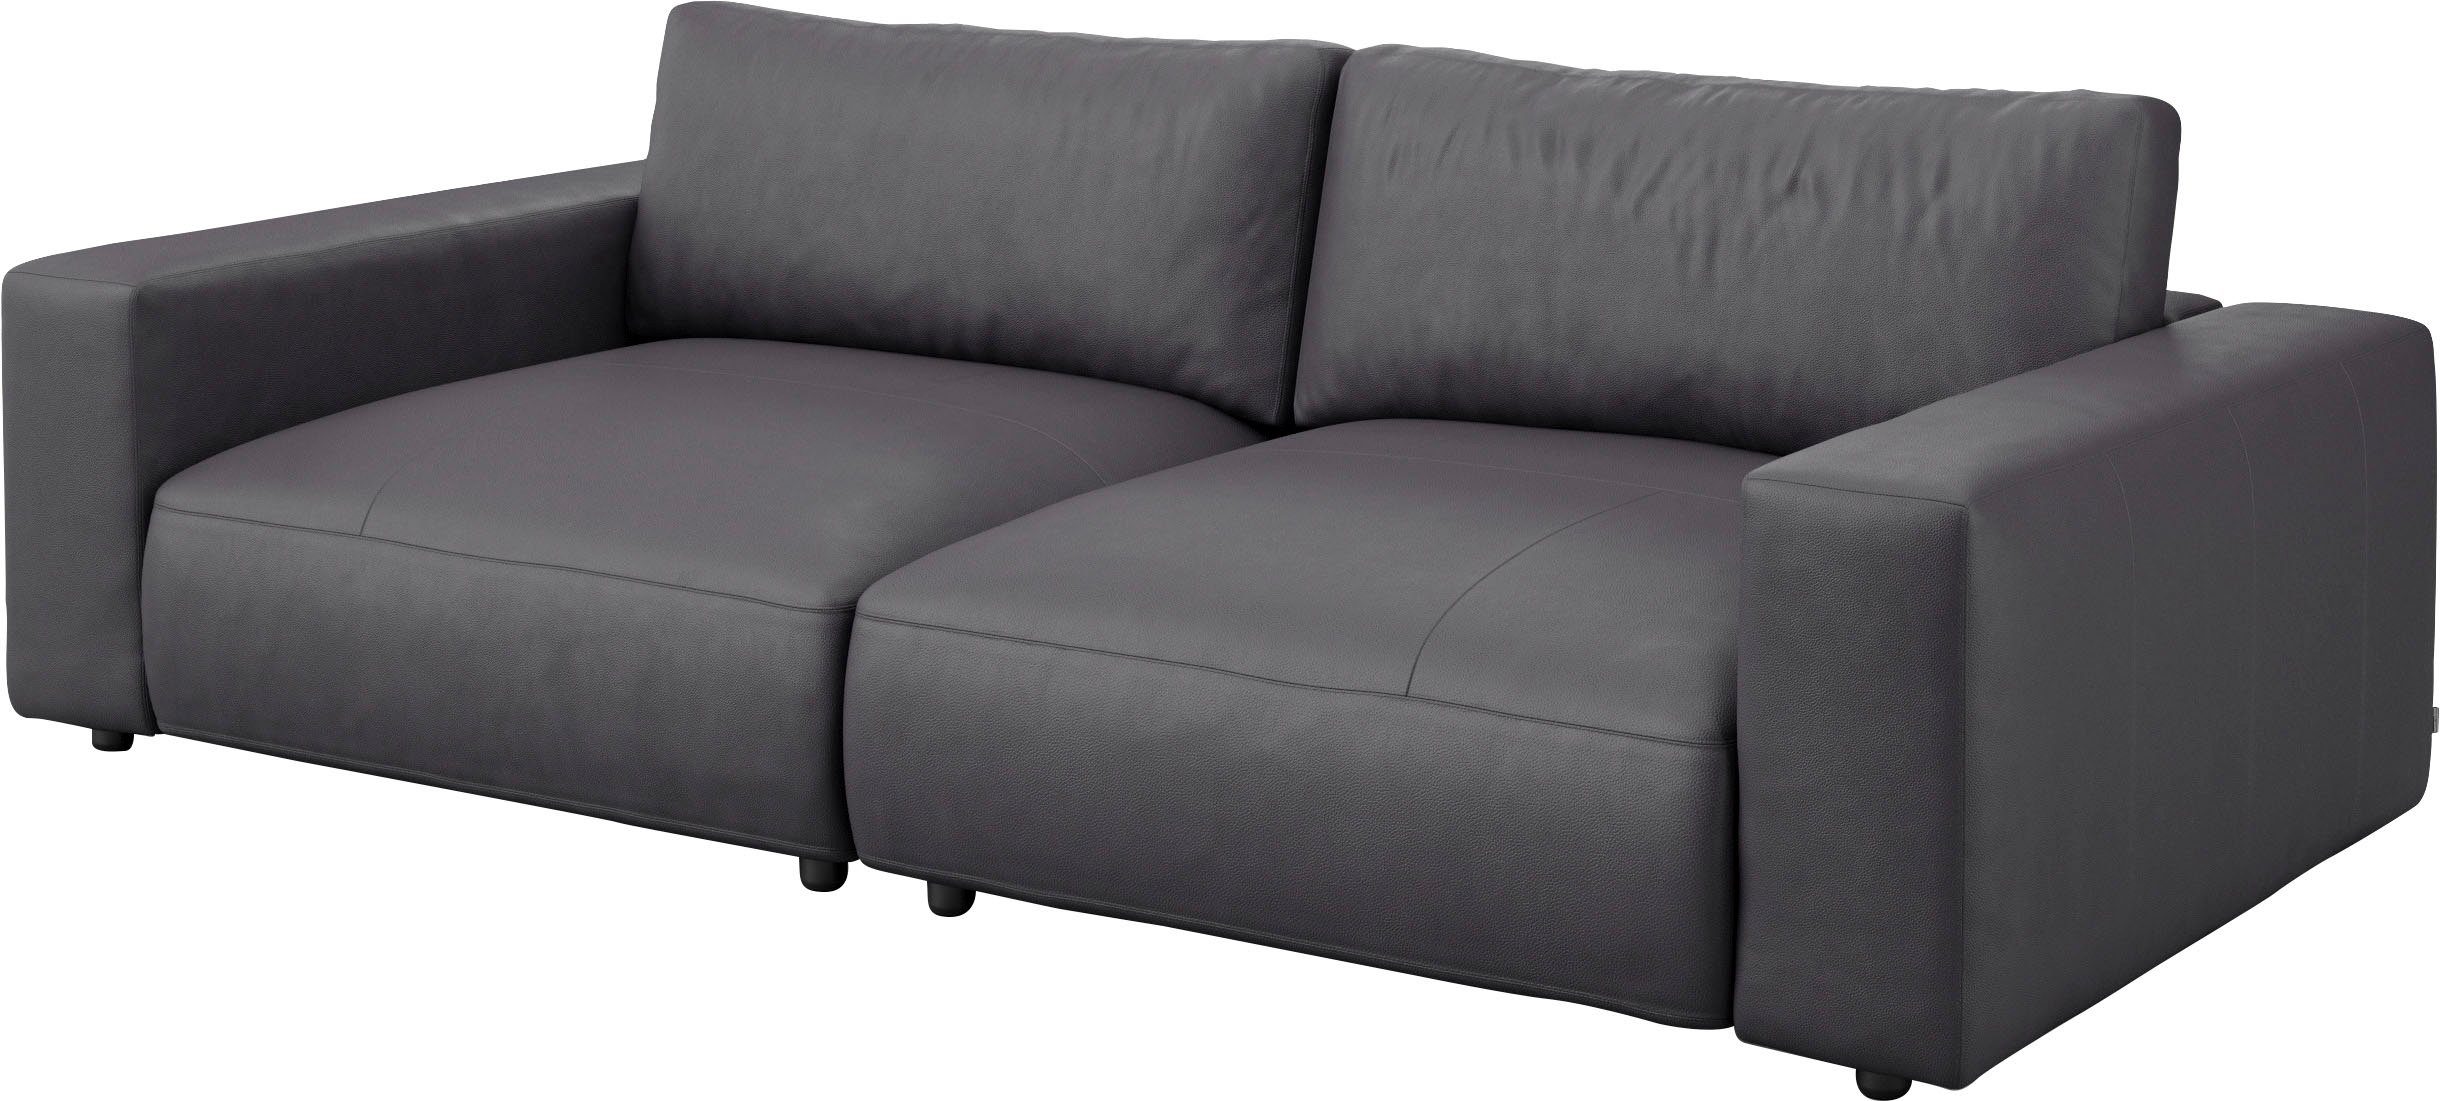 GALLERY M branded by unterschiedlichen LUCIA, und 4 in Nähten, vielen Qualitäten 2,5-Sitzer Big-Sofa Musterring